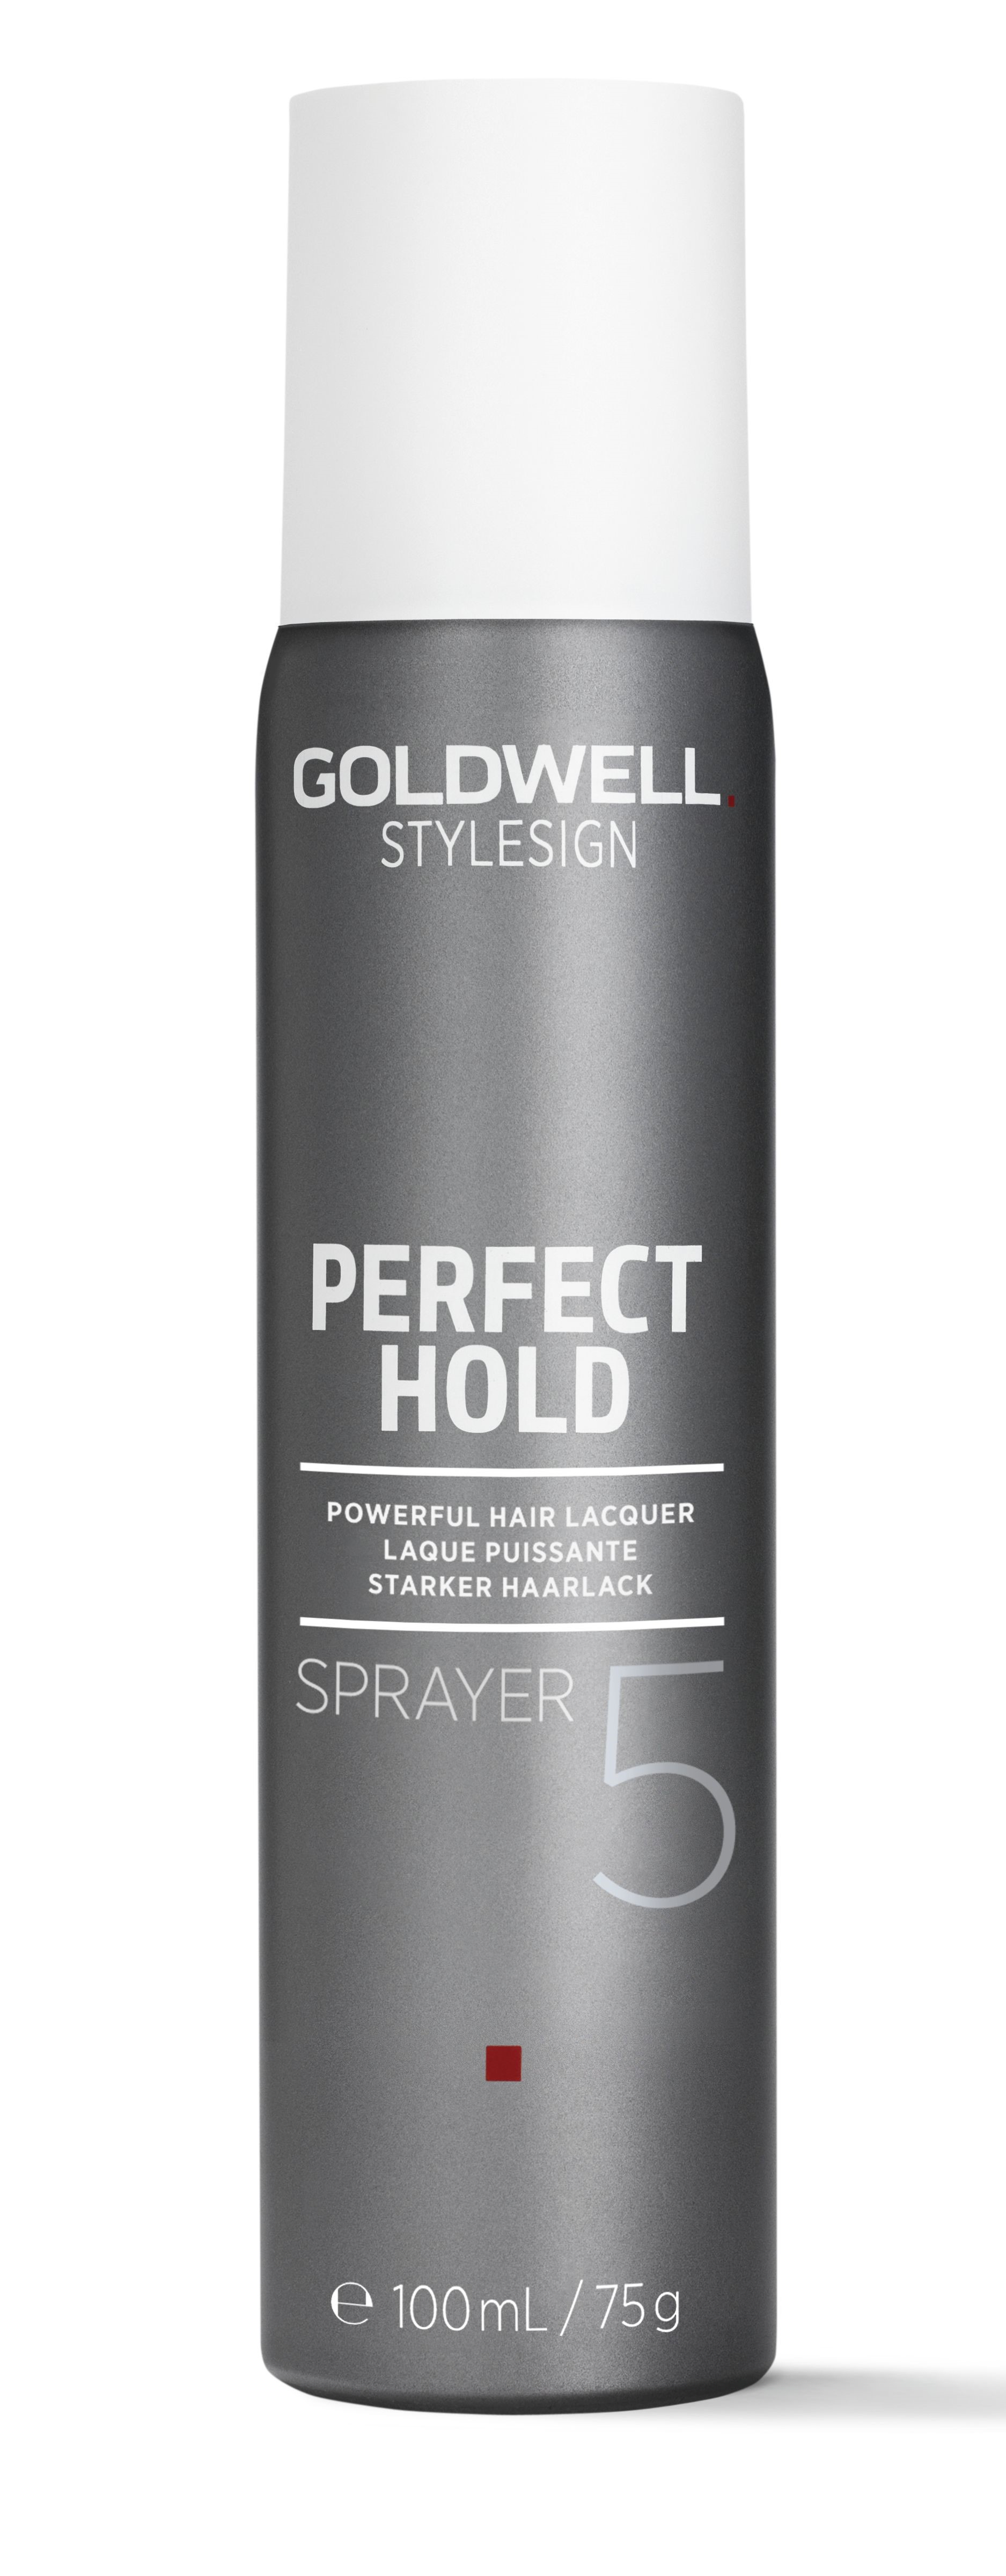 Goldwell Stylesign Perfect Hold Sprayer Reisegröße 100 ml